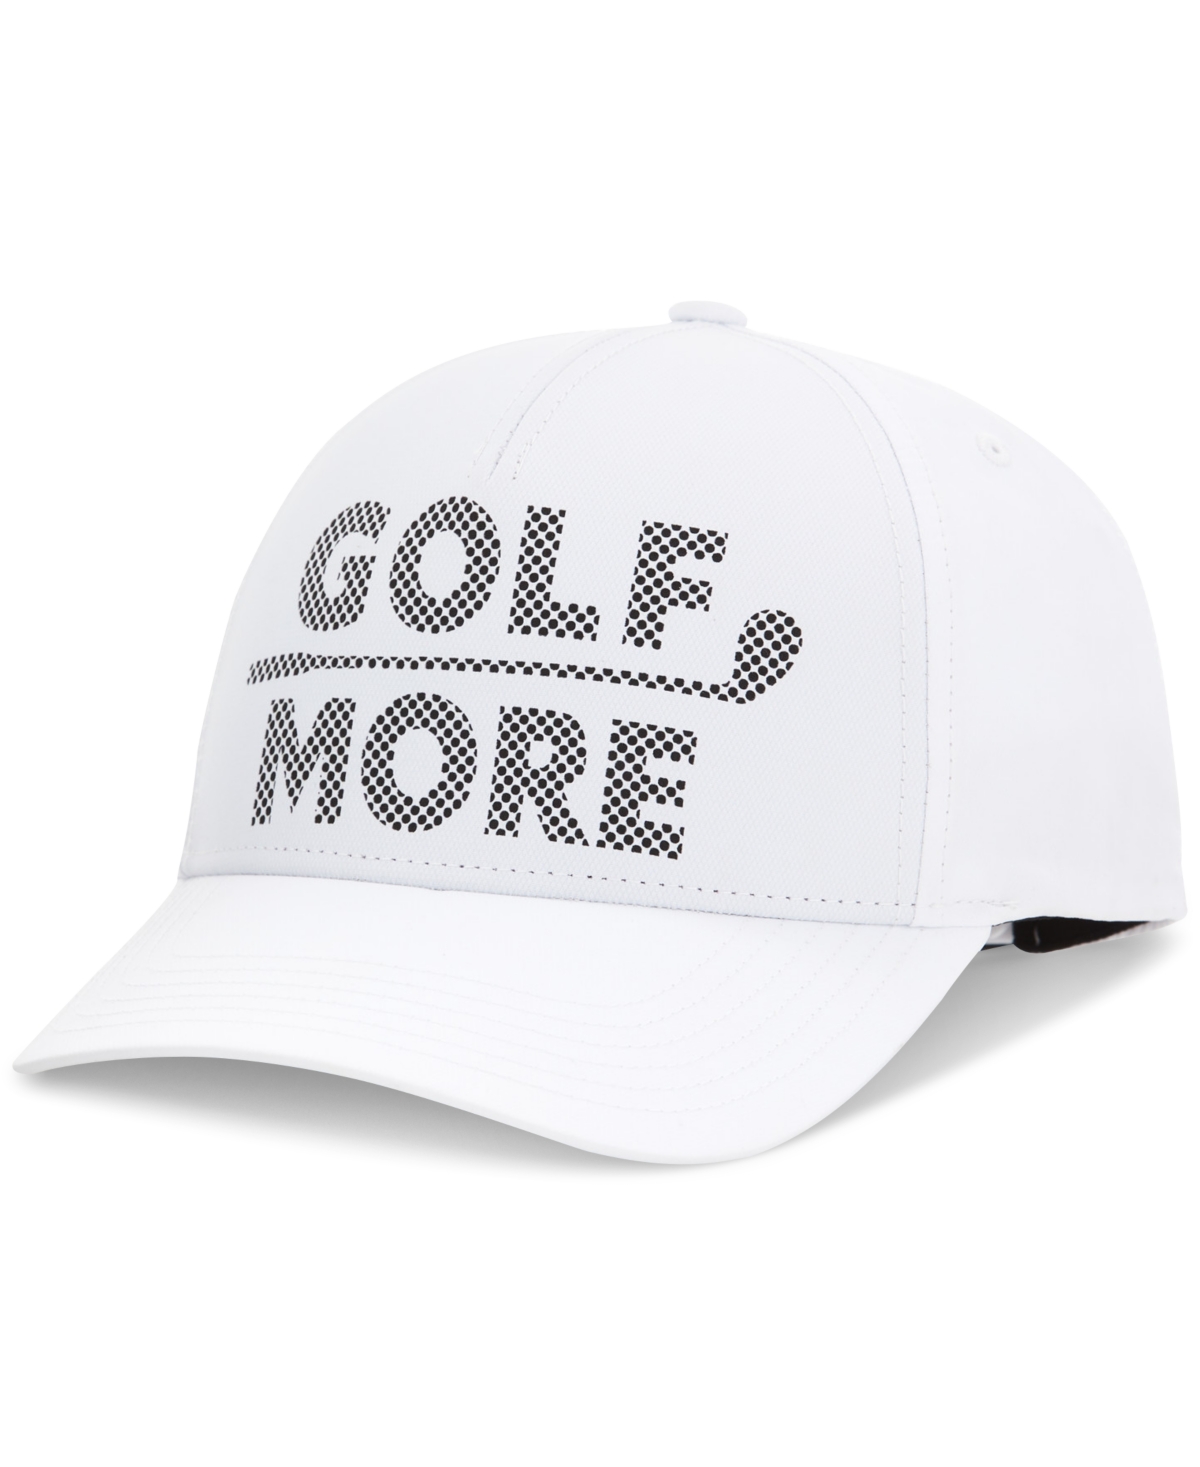 Pga Tour Men's Golf More Perforated Golf Cap In Bright Whi